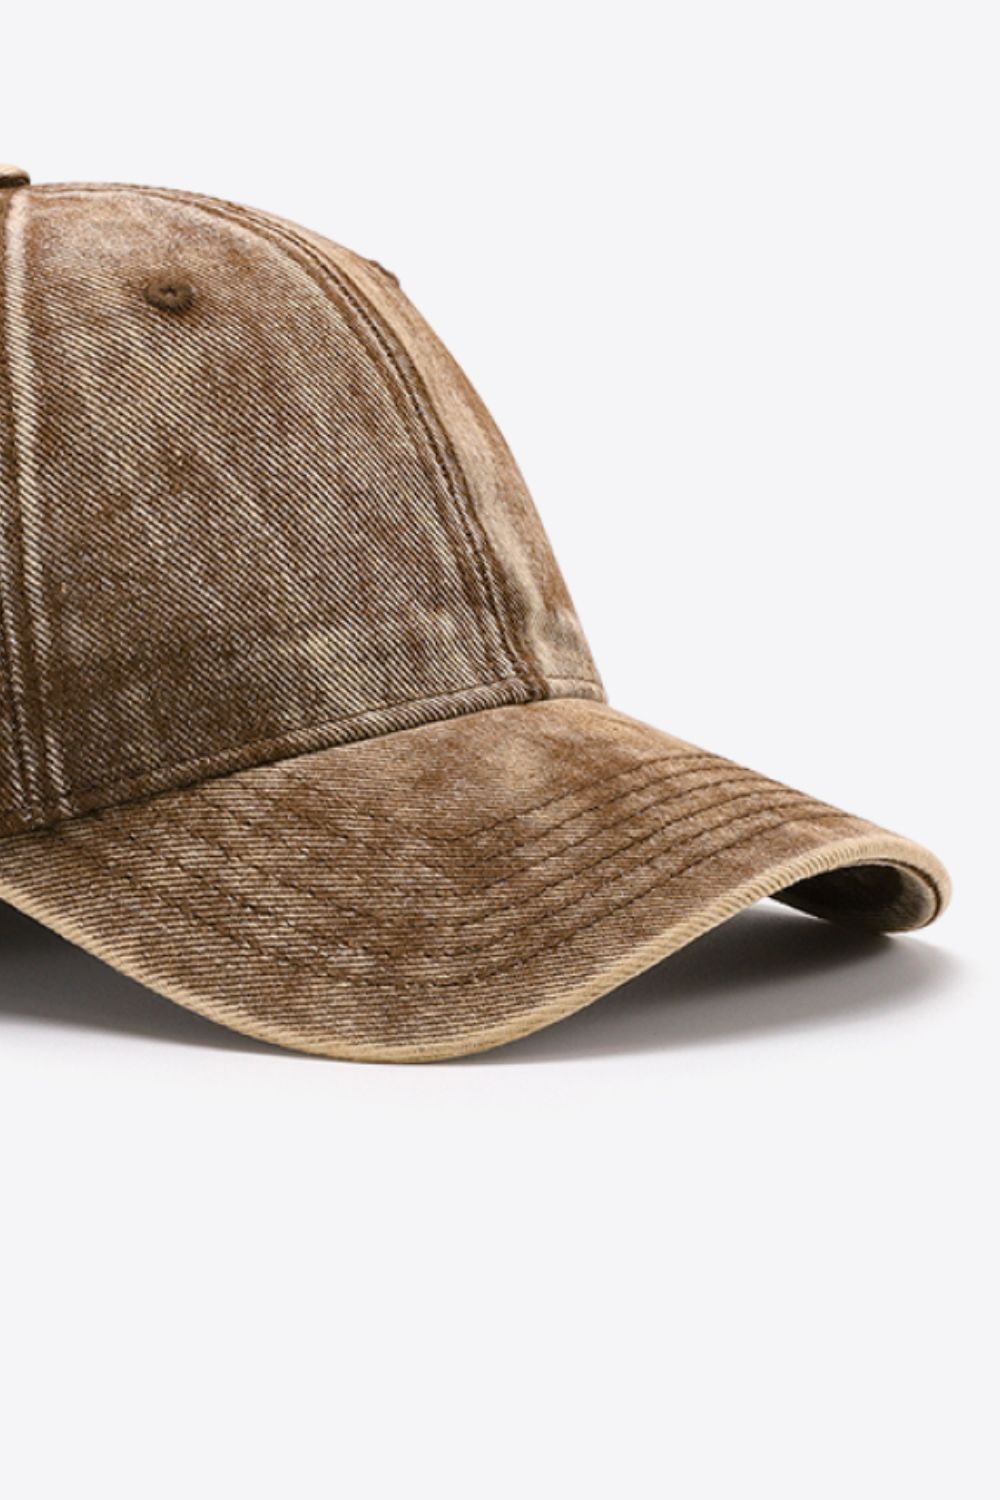 Denim Baseball Hat brown brim